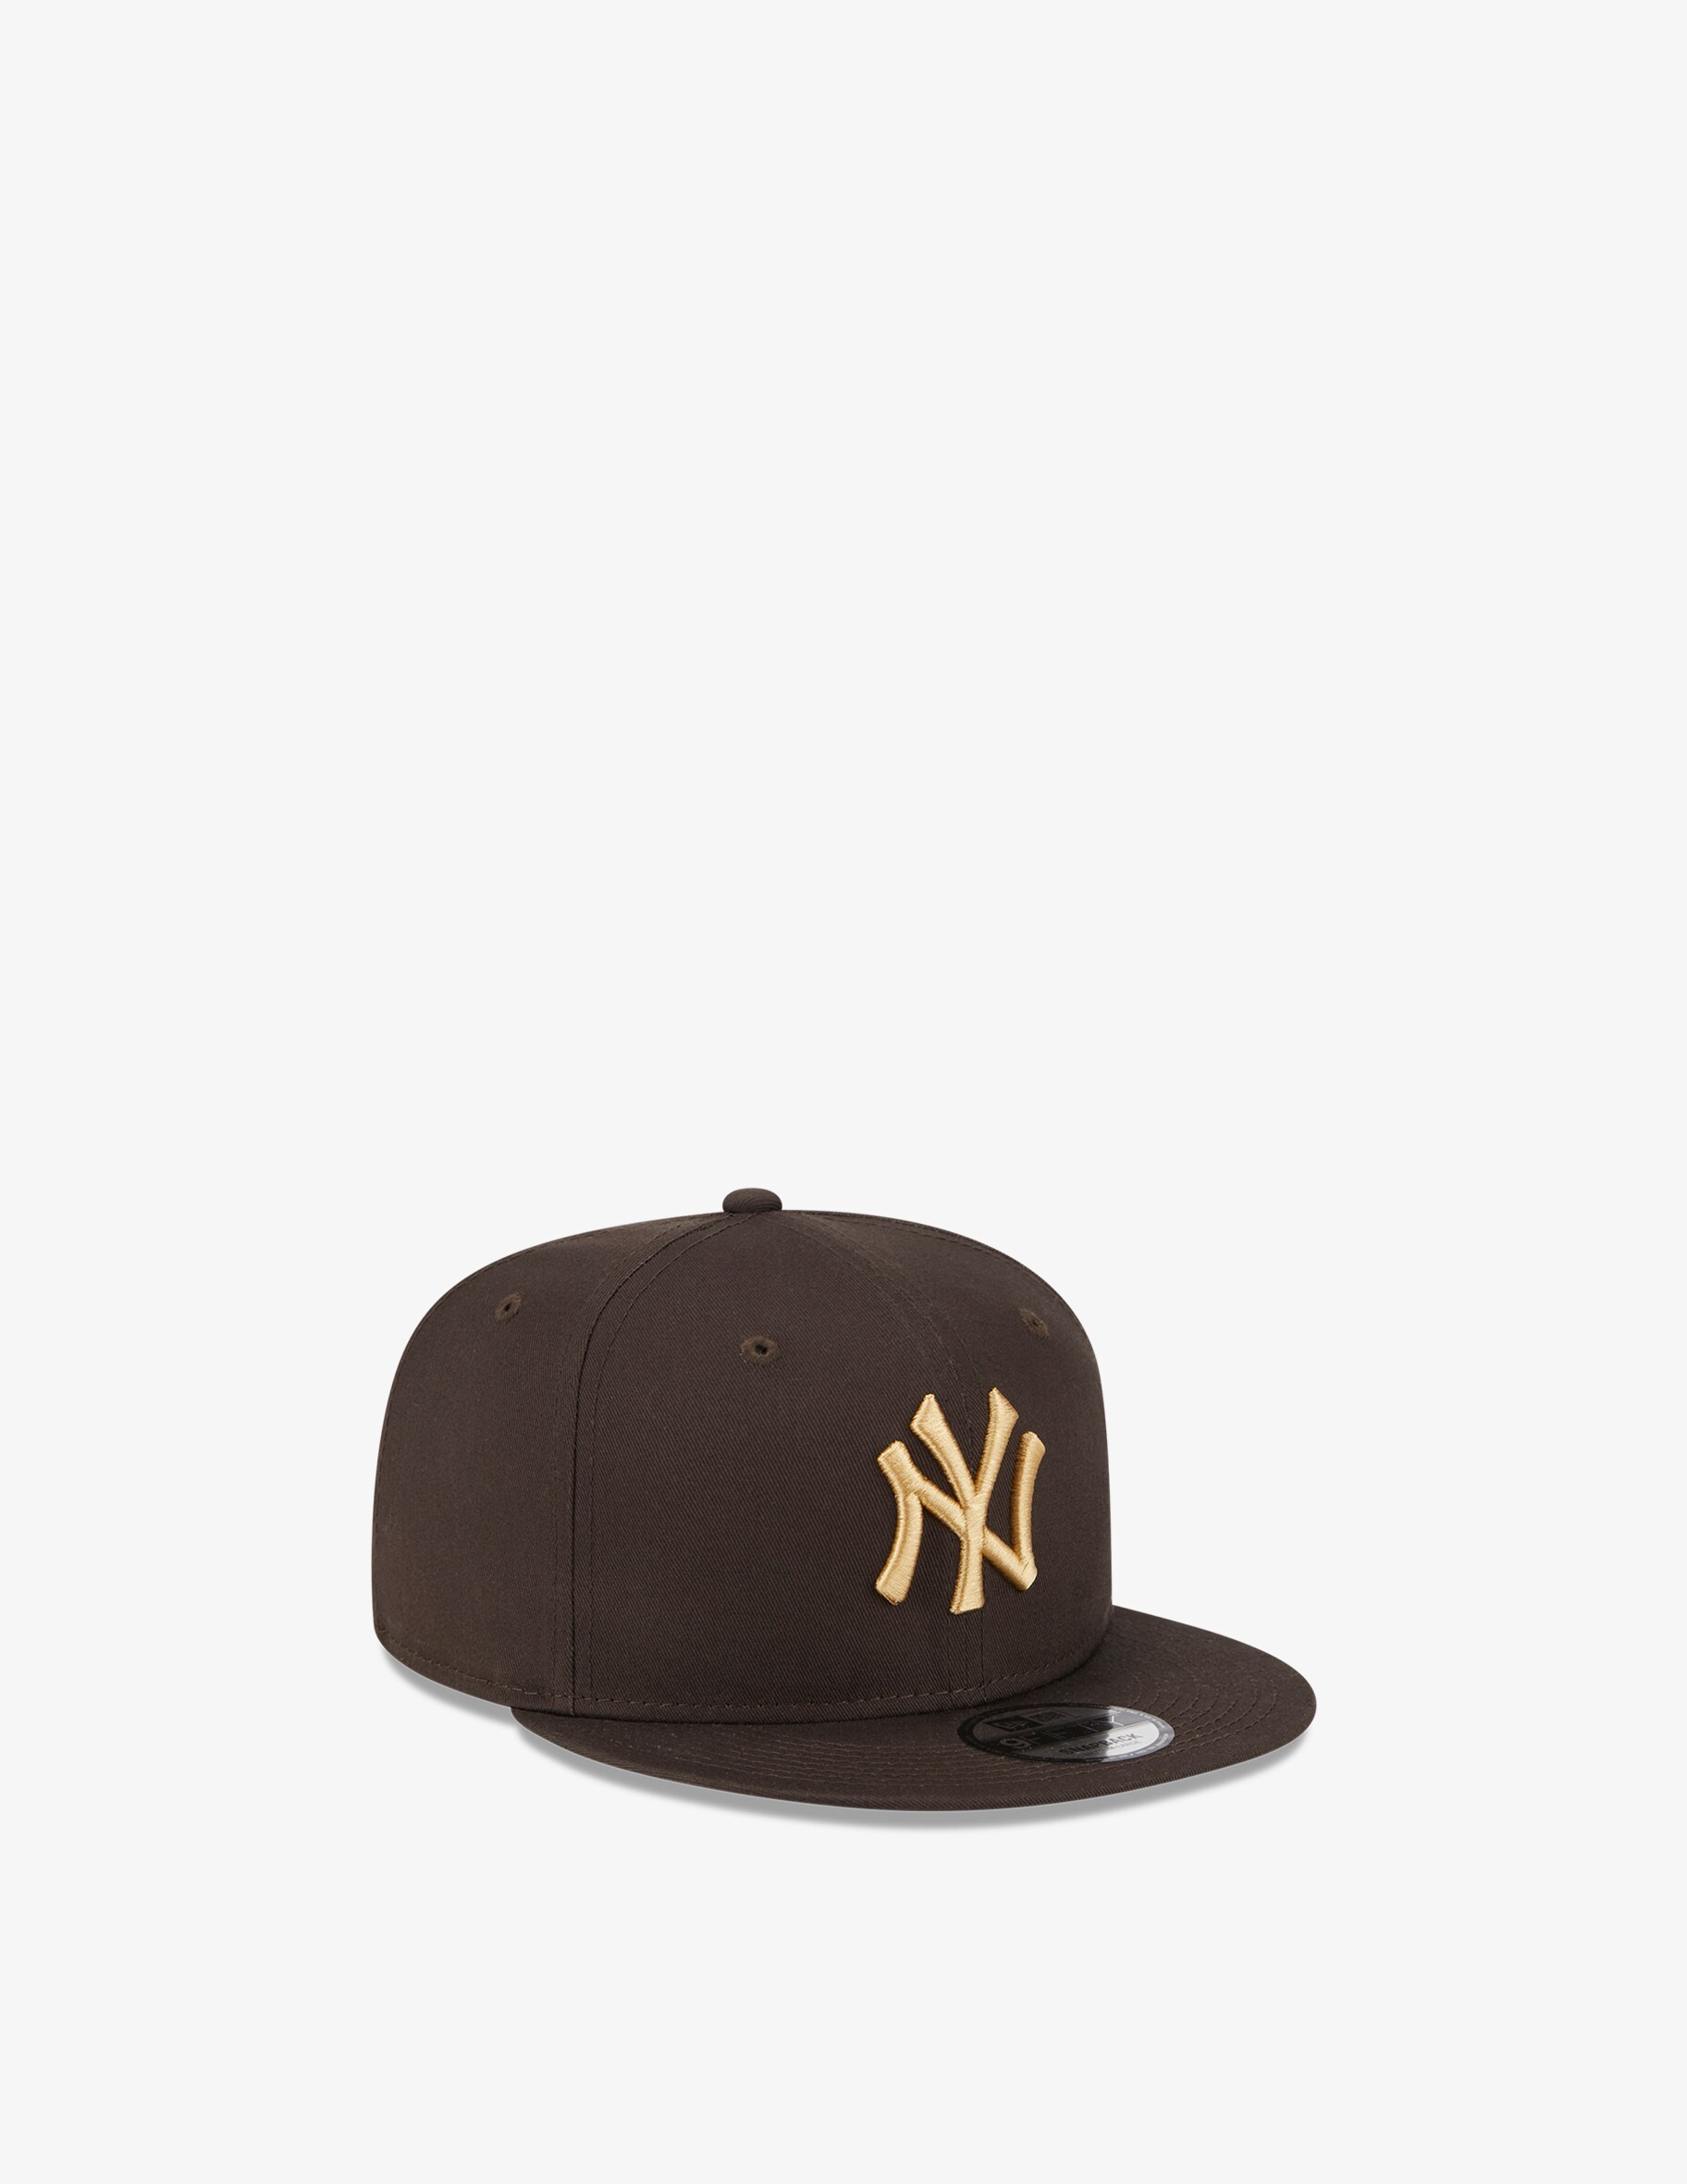 Кепка League Essential 9fifty Нью-Йорк Янкиз New Era, коричневый